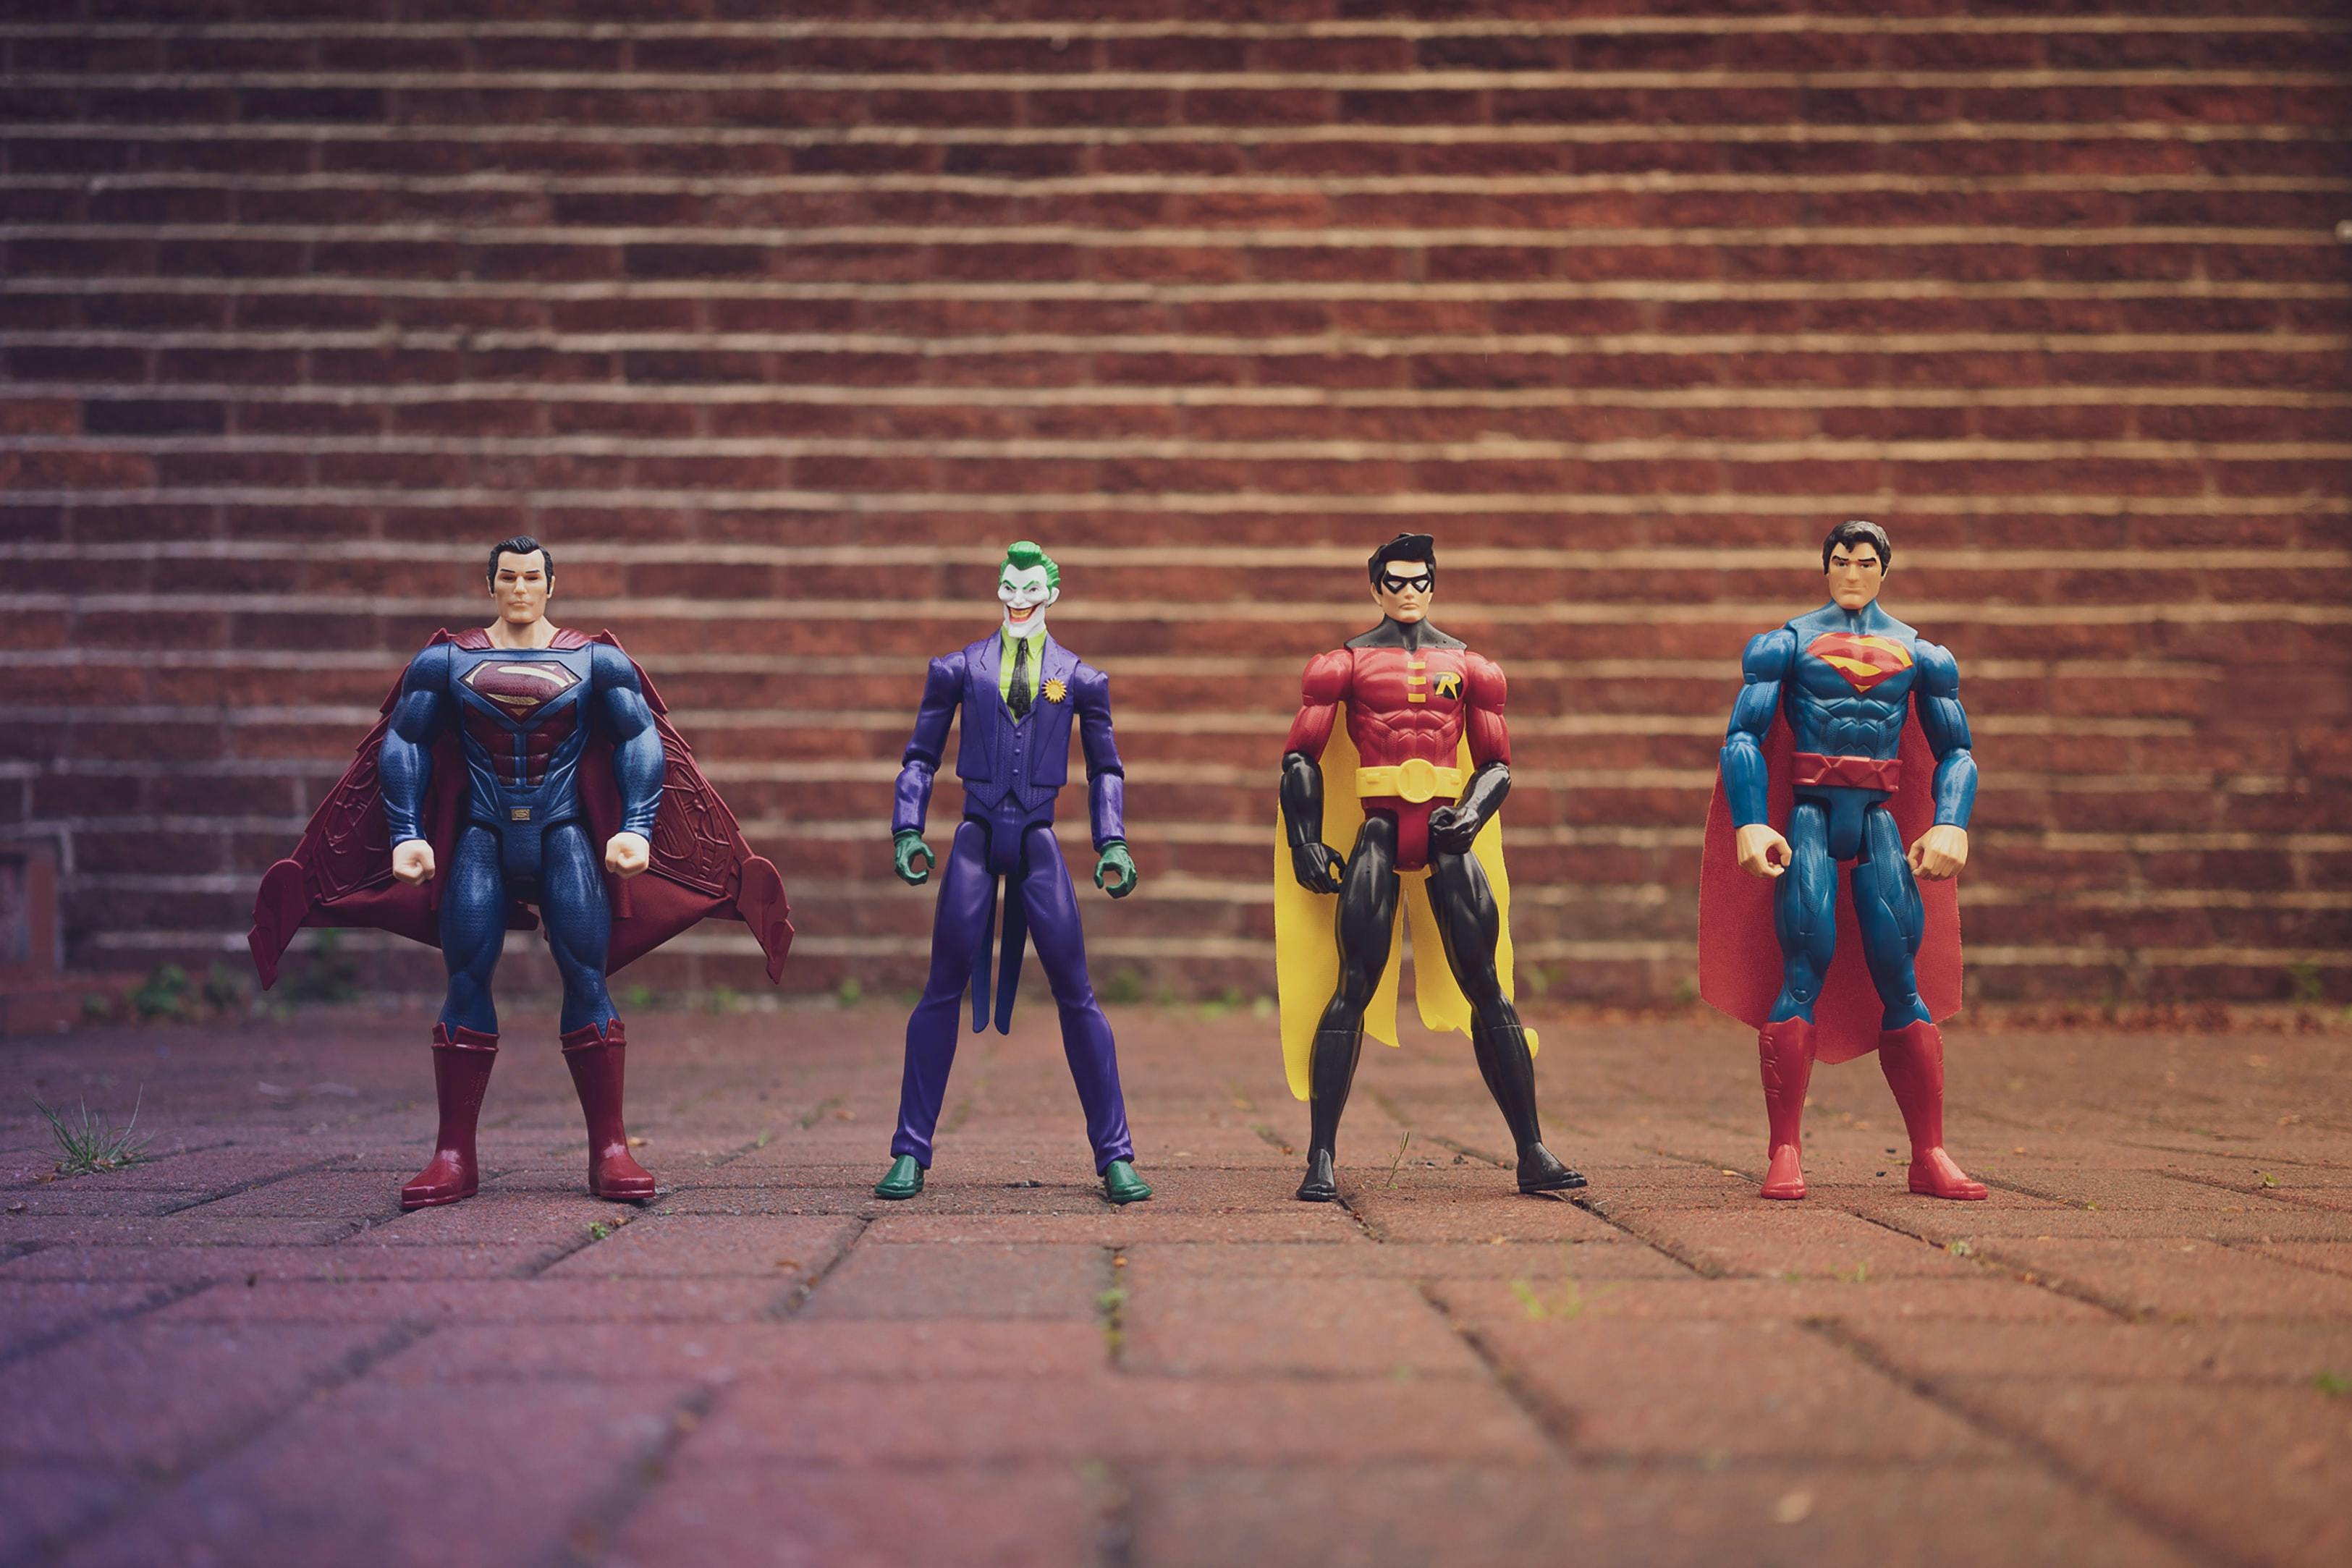 Super hero action figures